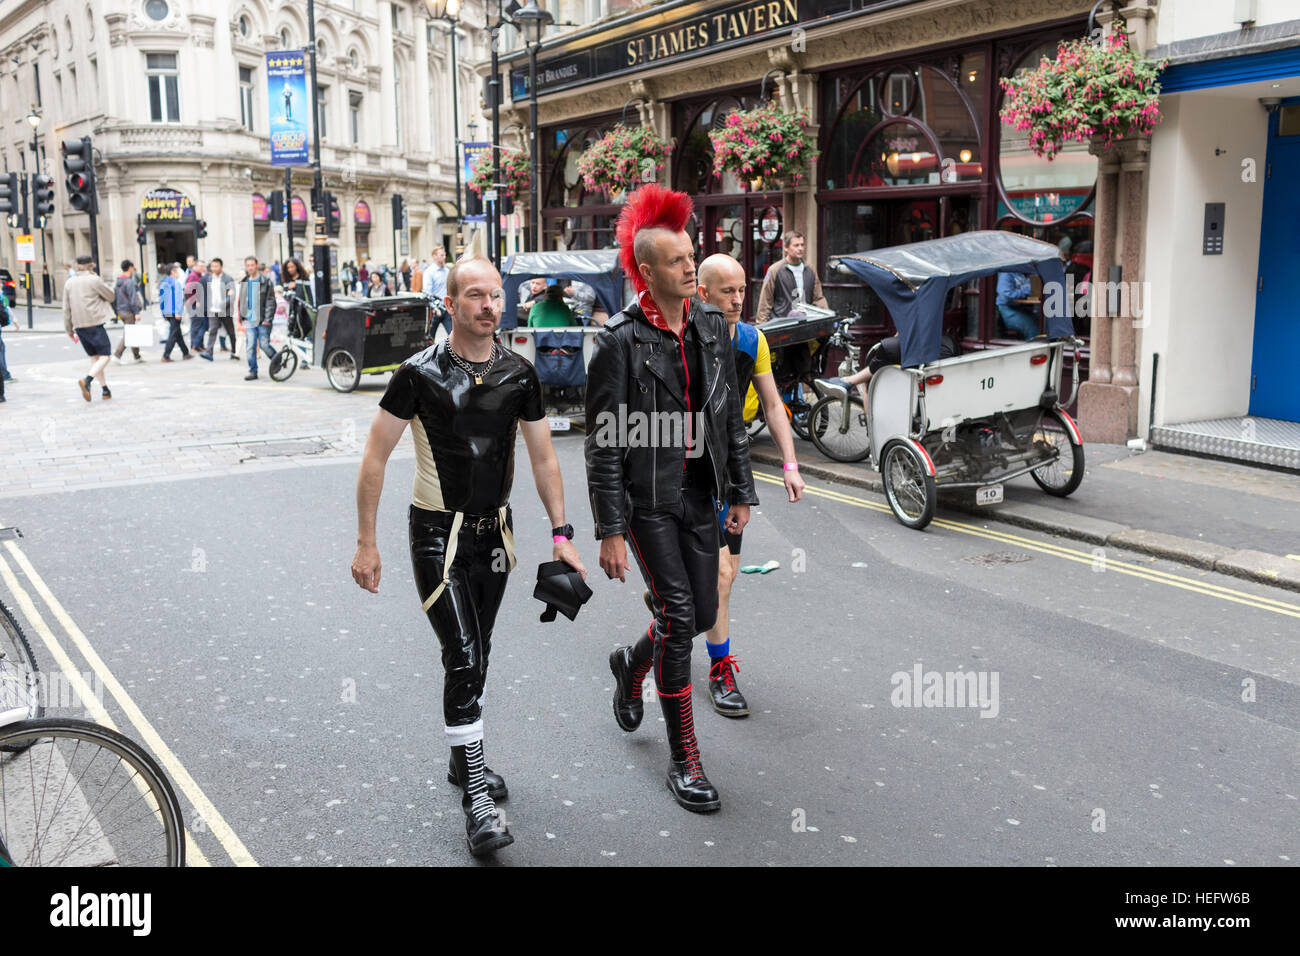 Un homme avec un Mohican rouge promenades avec vos amis vers Old Compton Street à Londres, au Royaume-Uni. Prises au cours de la Gay Pride Festival 2016. Banque D'Images